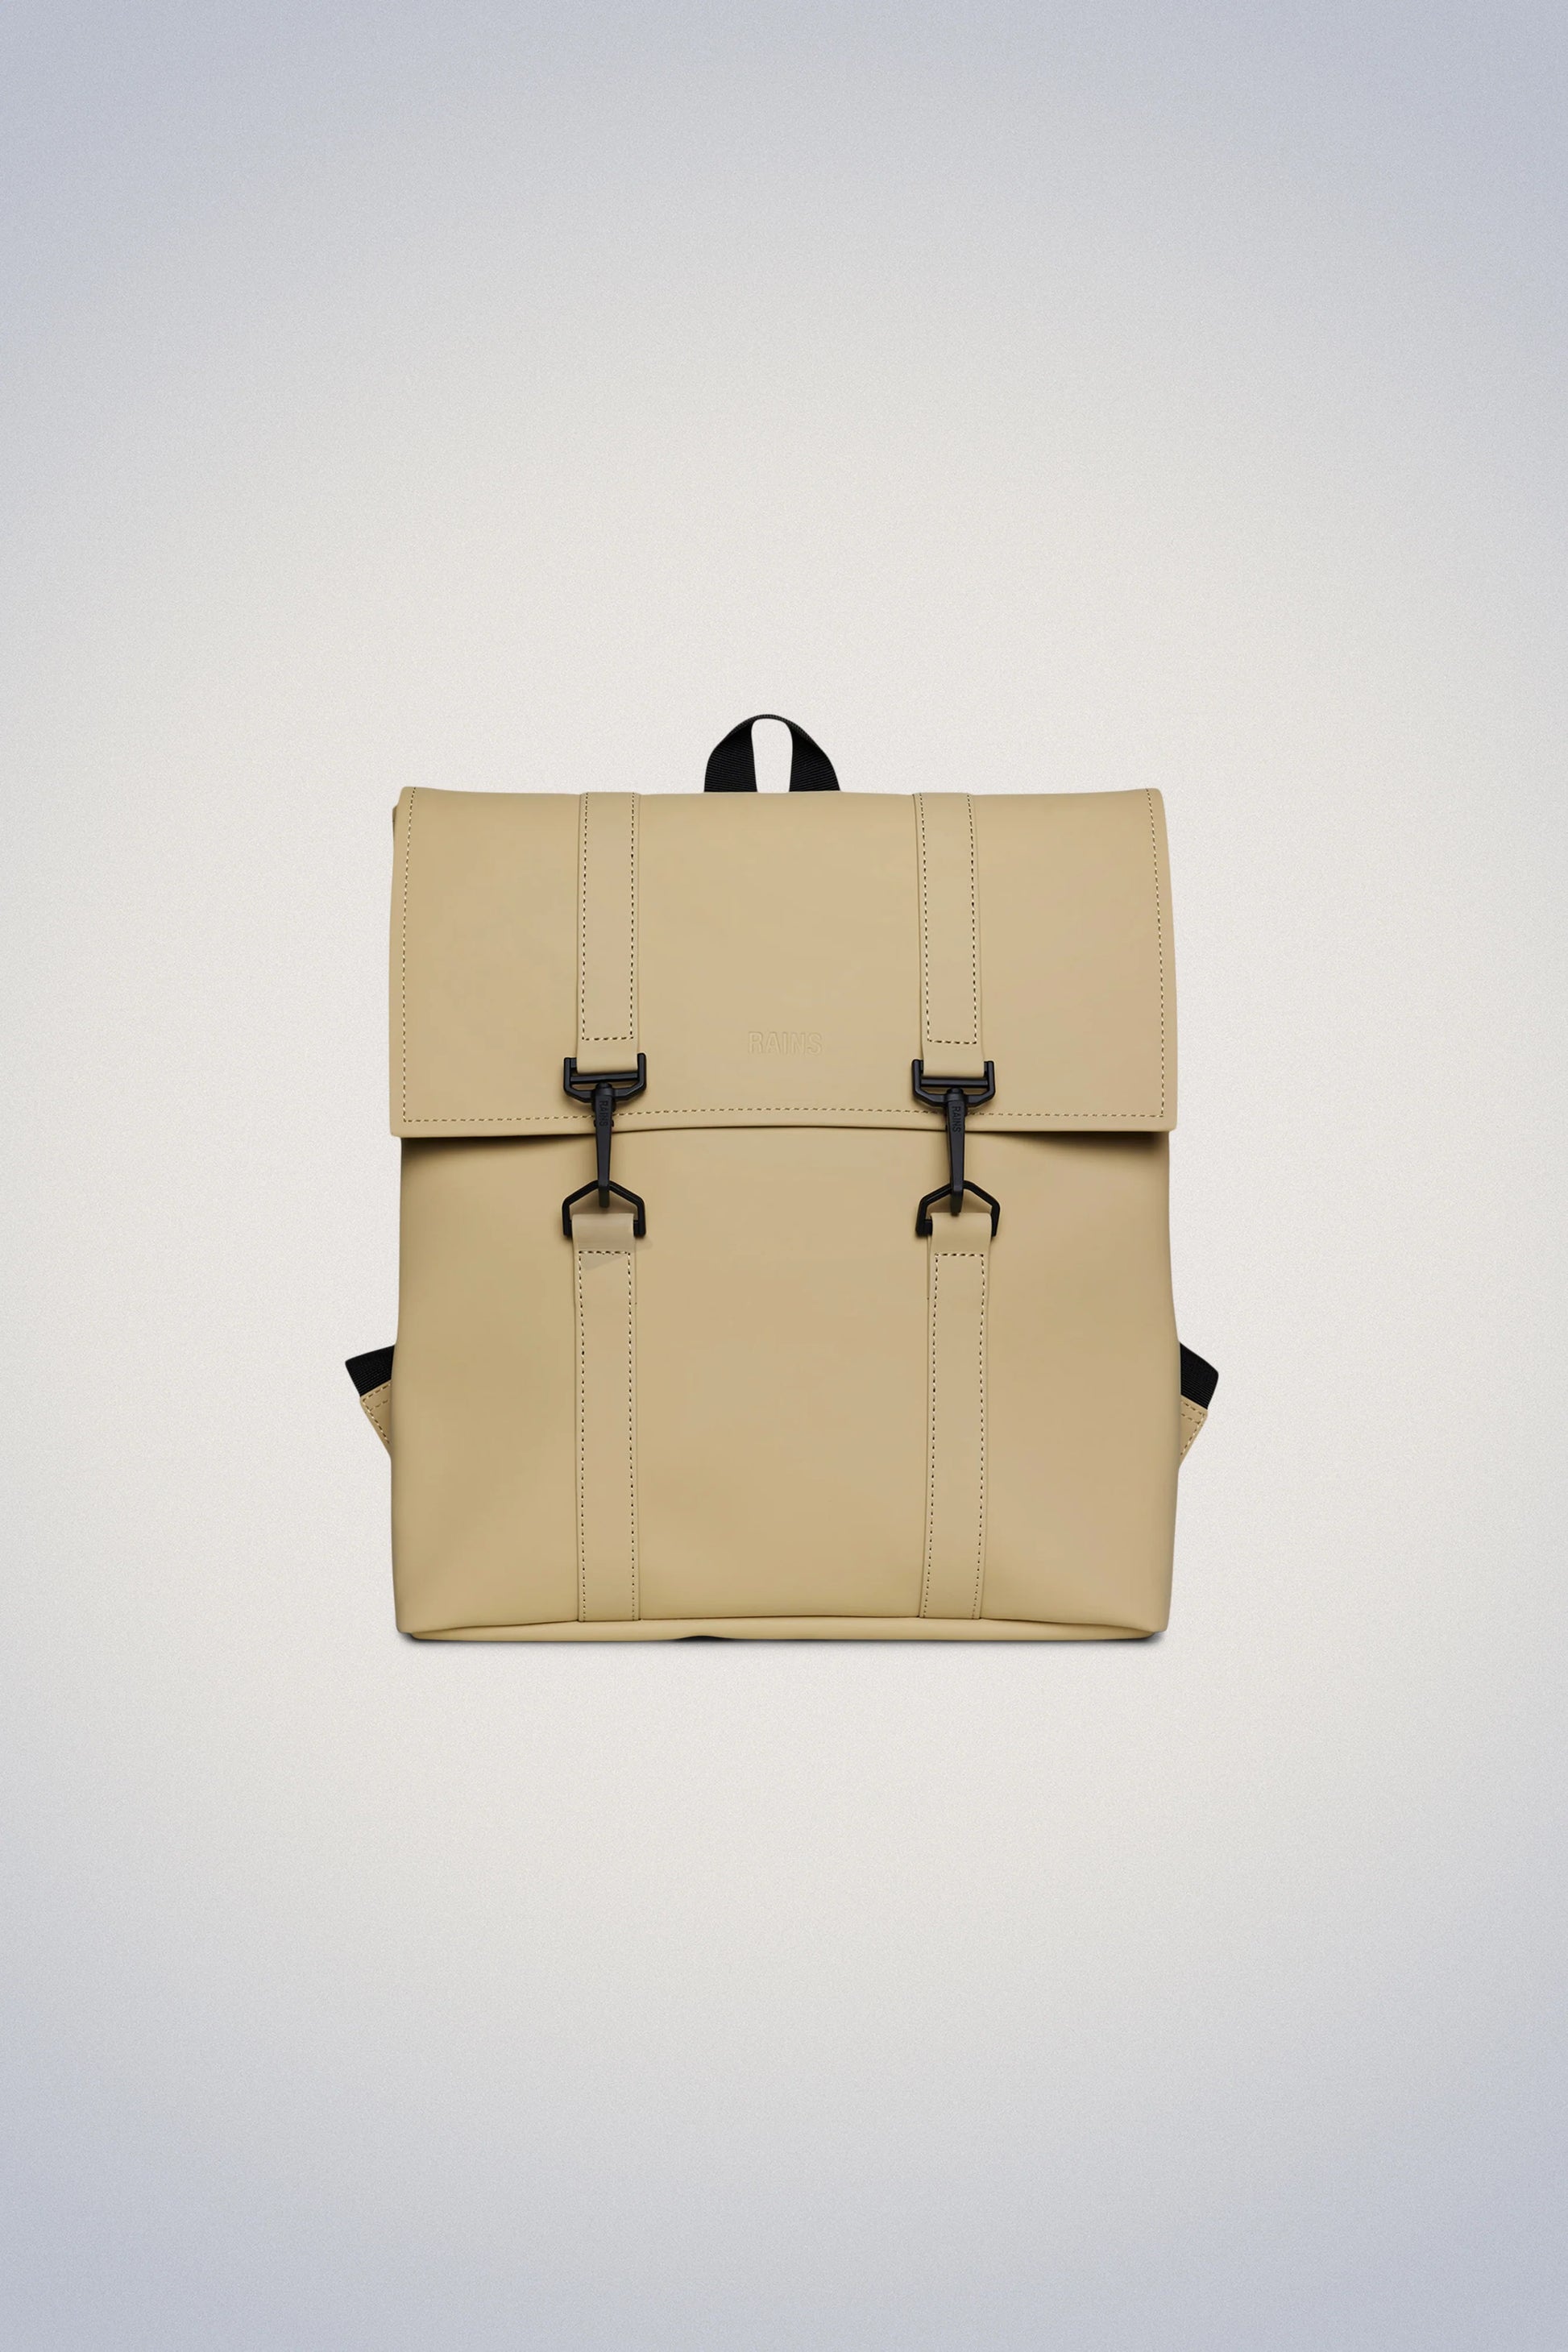 A beige Rains MSN Bag Mini backpack on a white background.